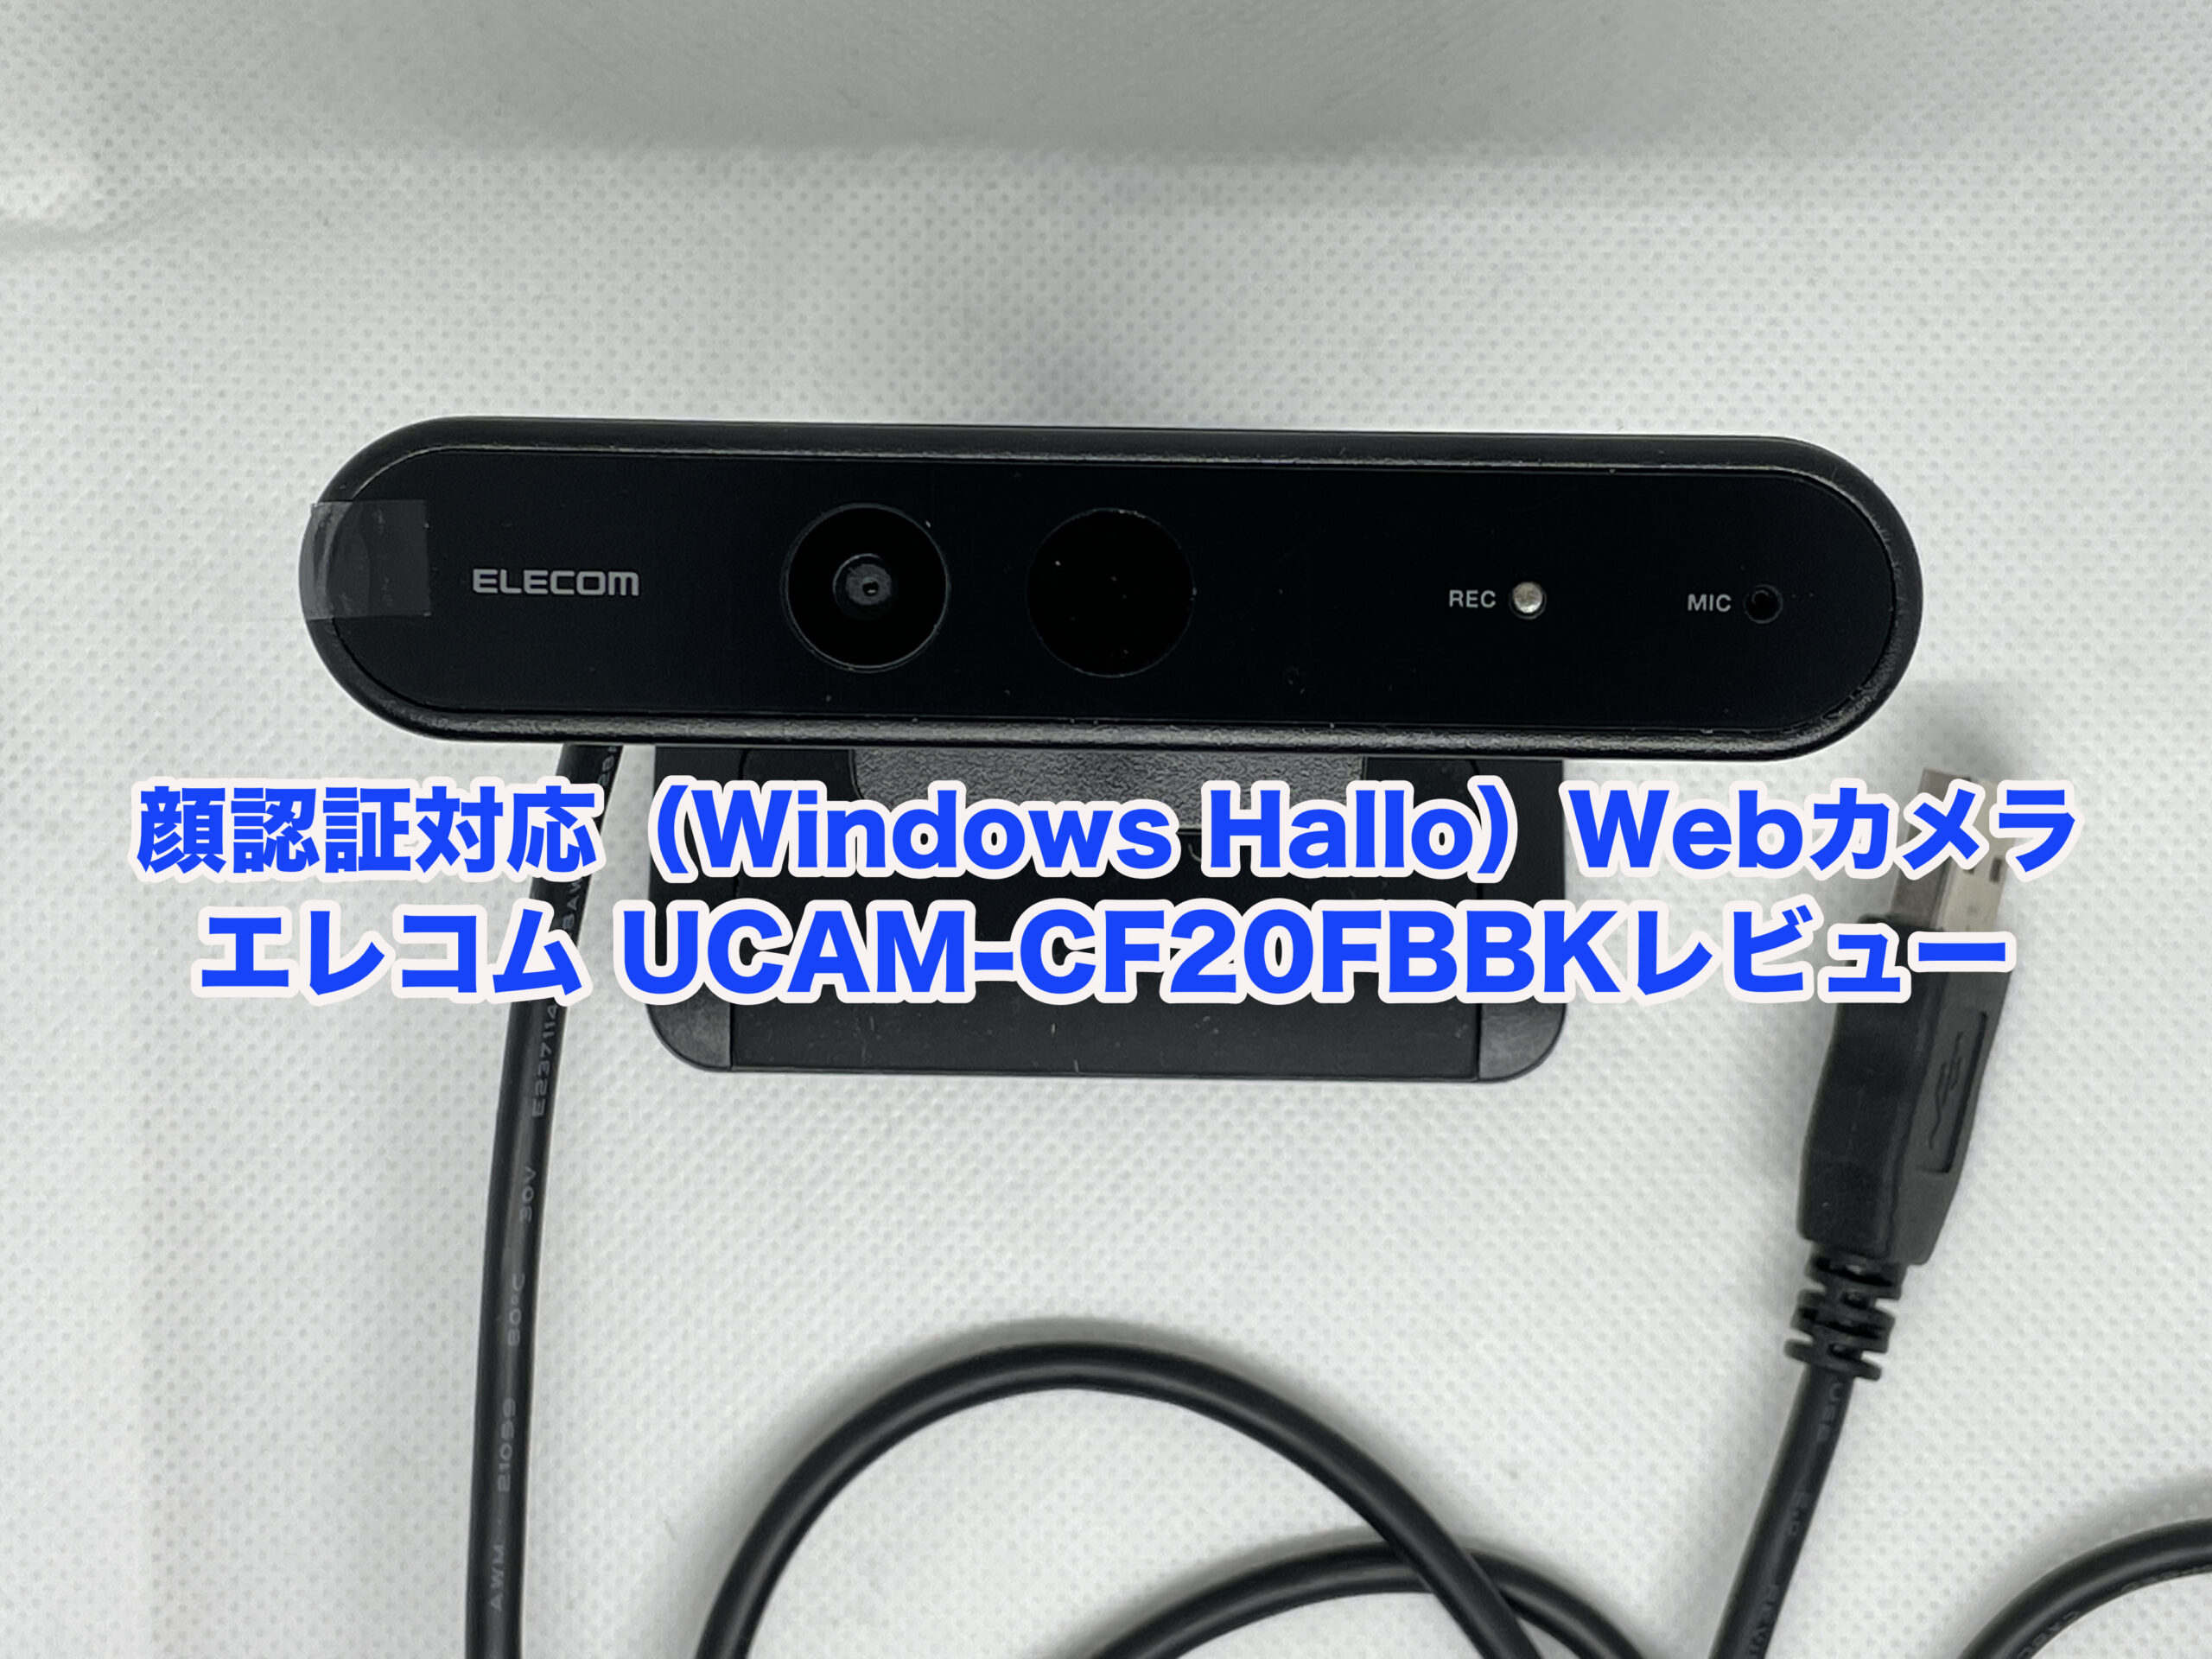 エレコム UCAM-CF20FBBKレビュー】コスパ抜群の顔認証対応（Windows Hallo）Webカメラ【Full HD 1080p対応】 |  キニサーチ